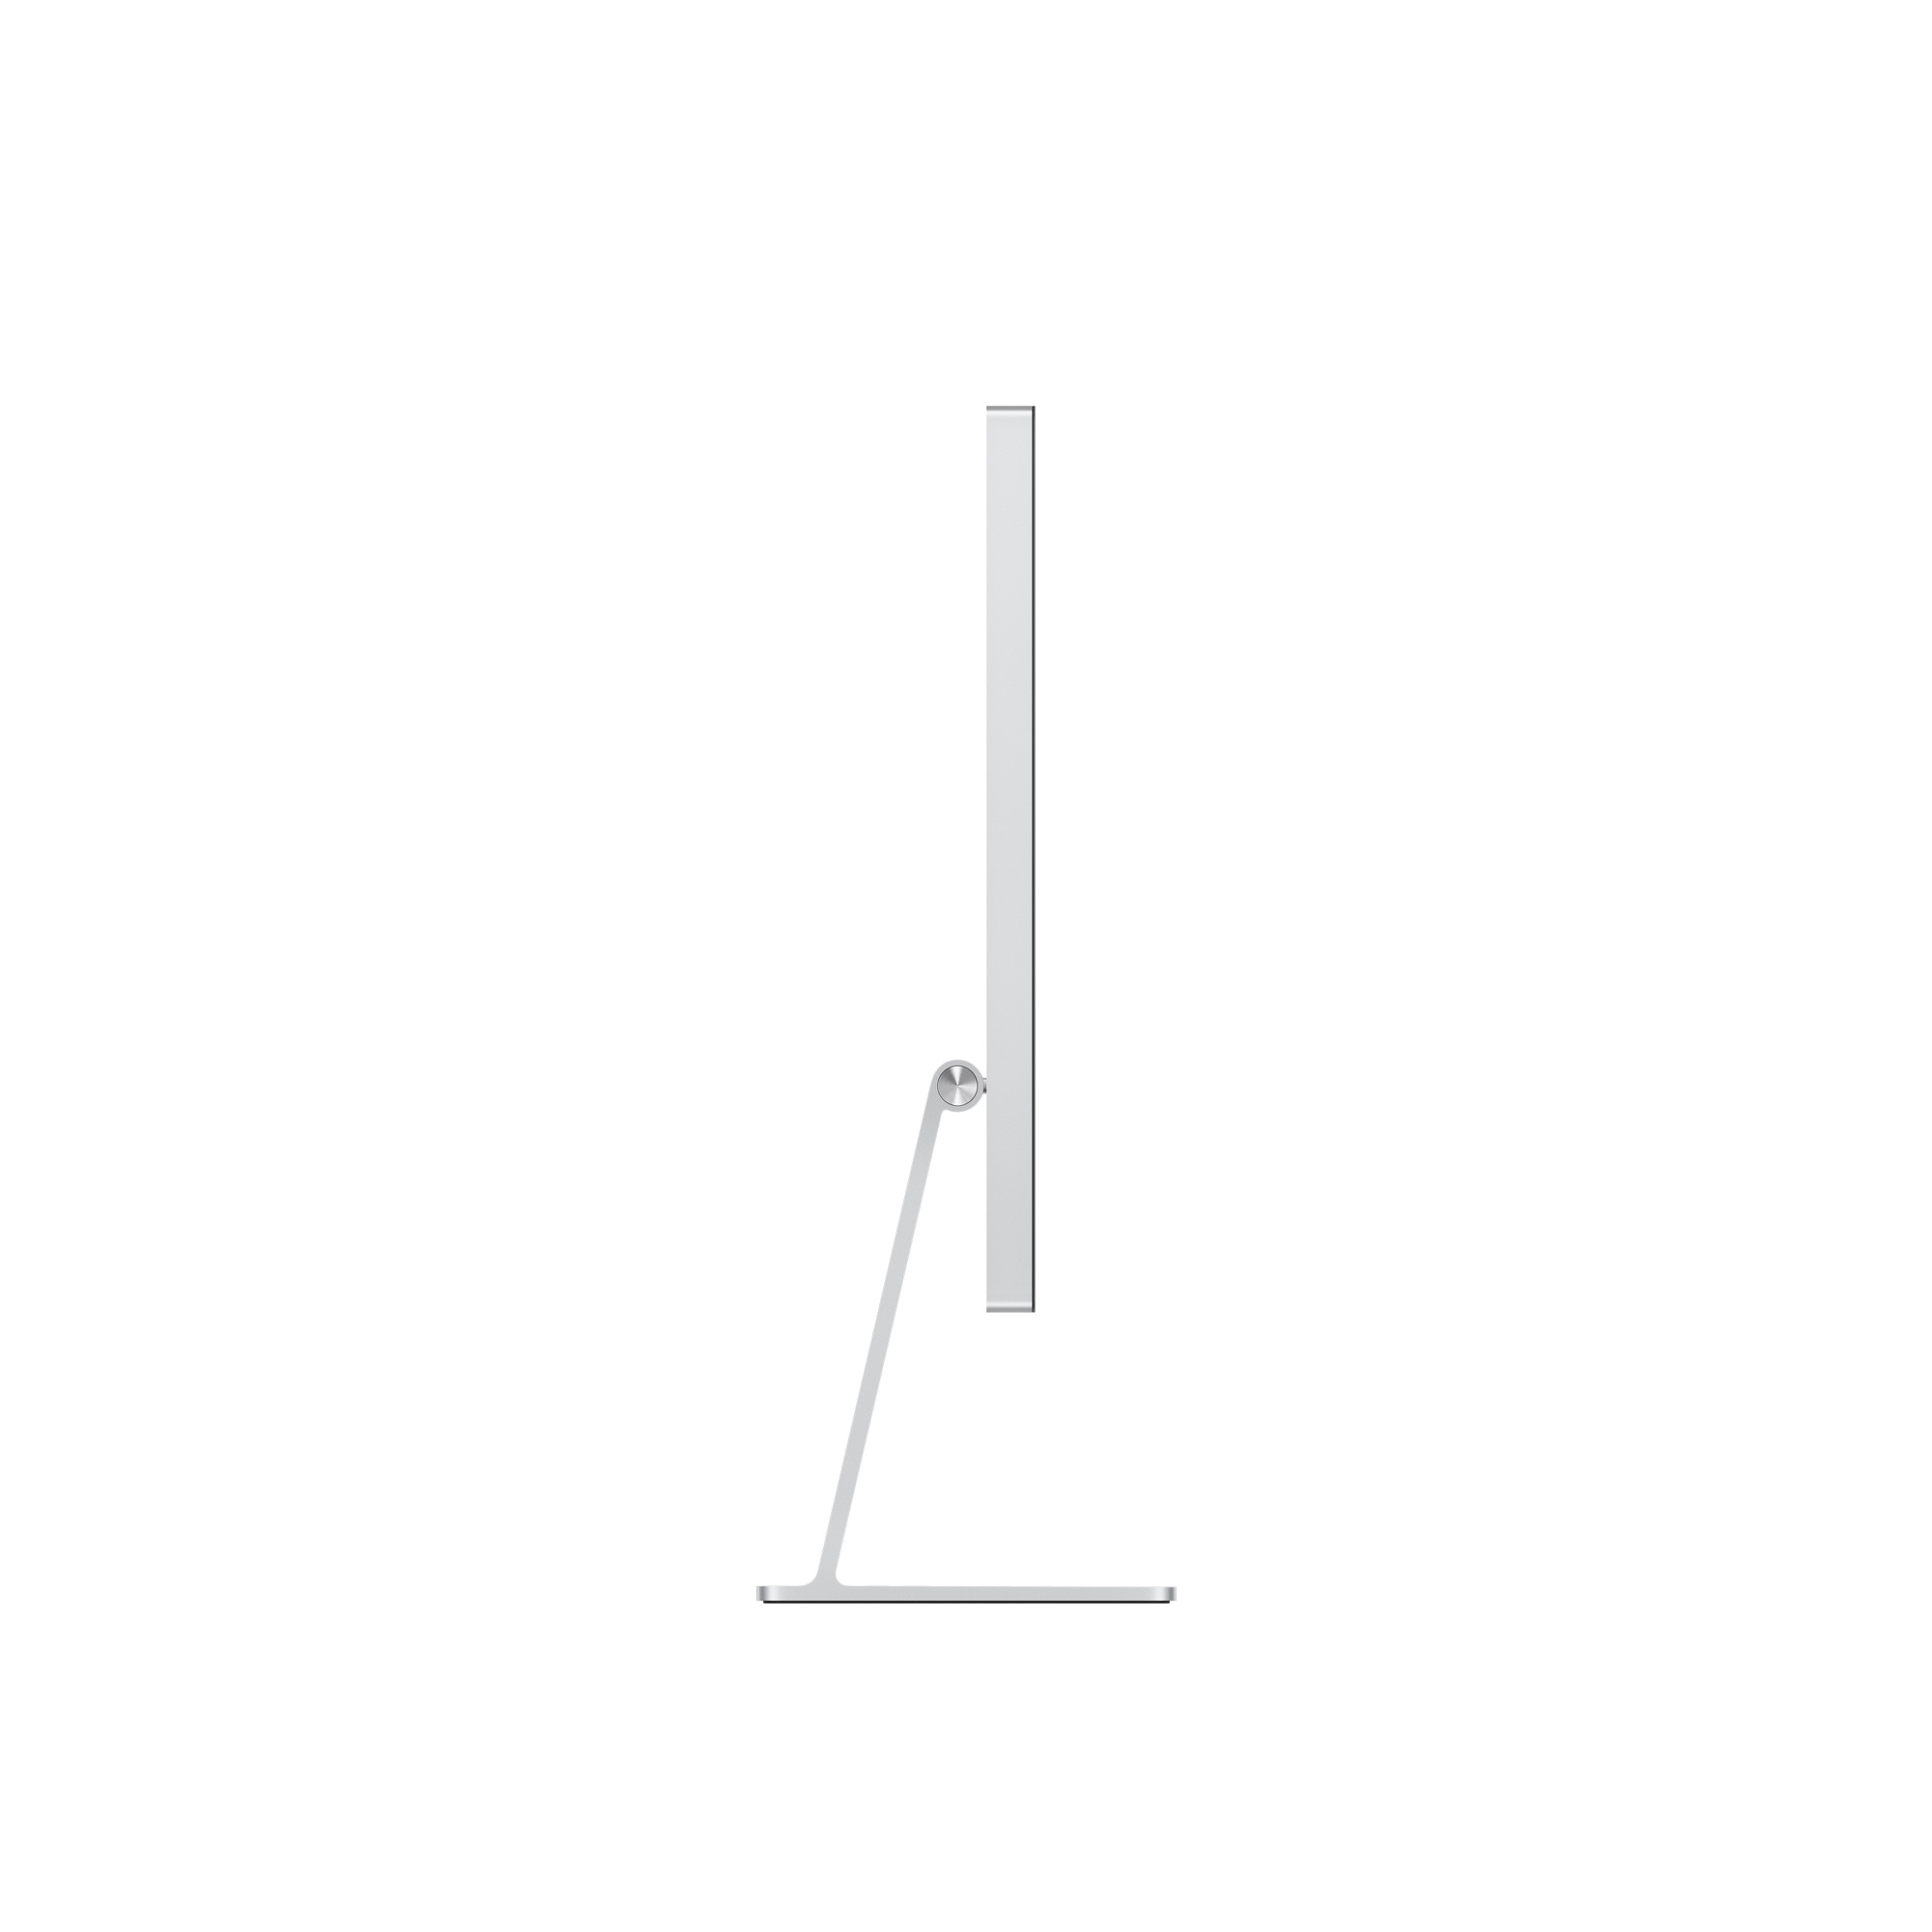 APPLE Studio Display - Nano-Texture Glass - Tilt- and Height-Adjustable Stand